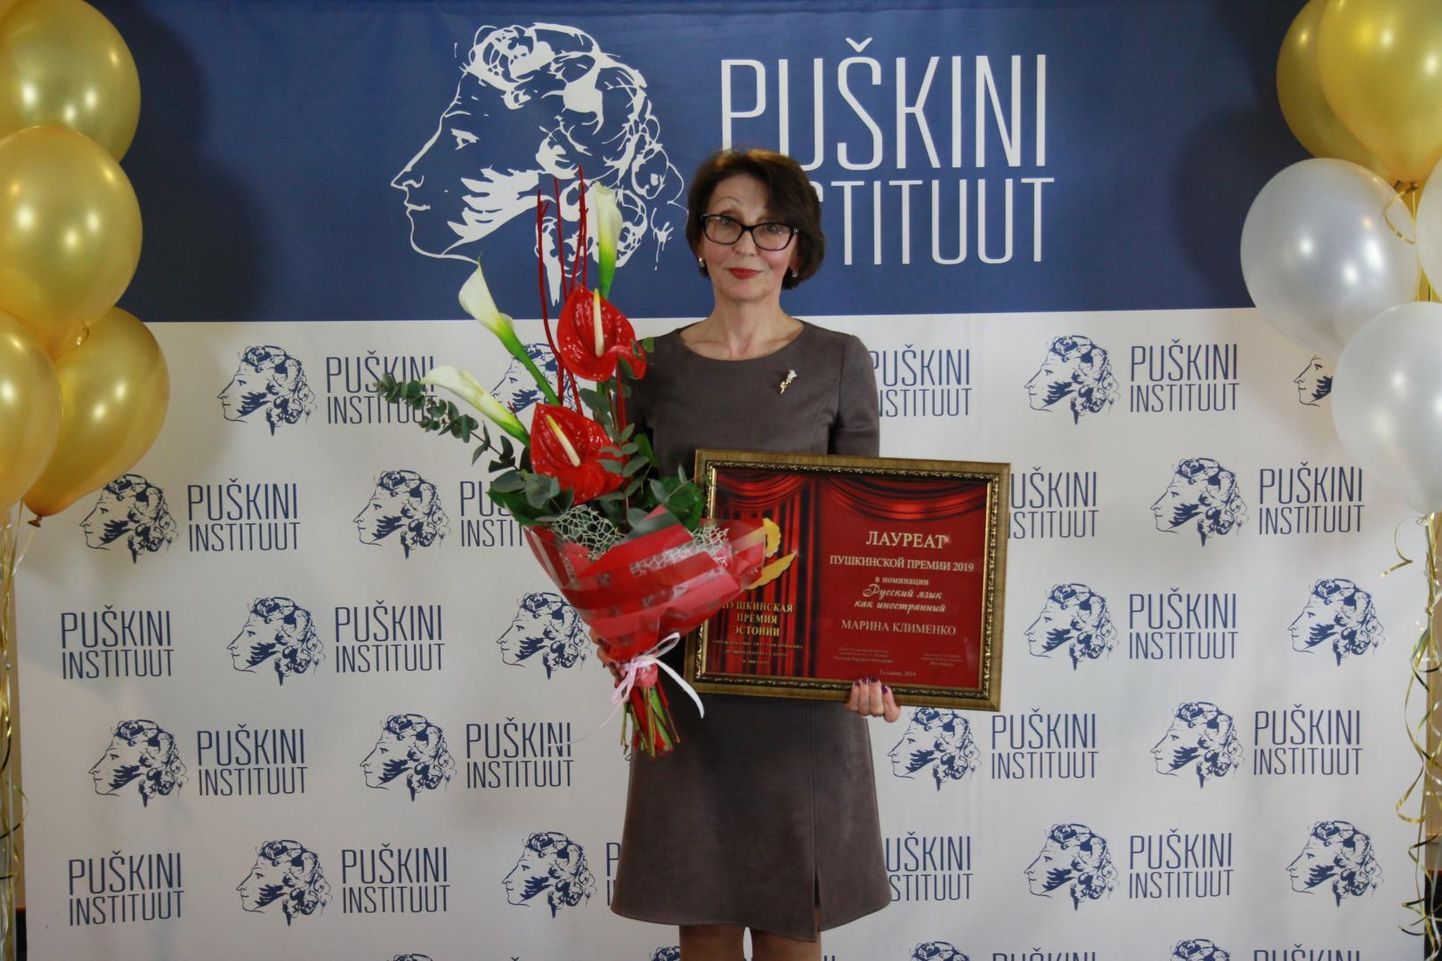 Kunda ühisgümnaasiumi ja Vasta kooli vene keele õpetaja Marina Klimenko pälvis Puškini preemia.